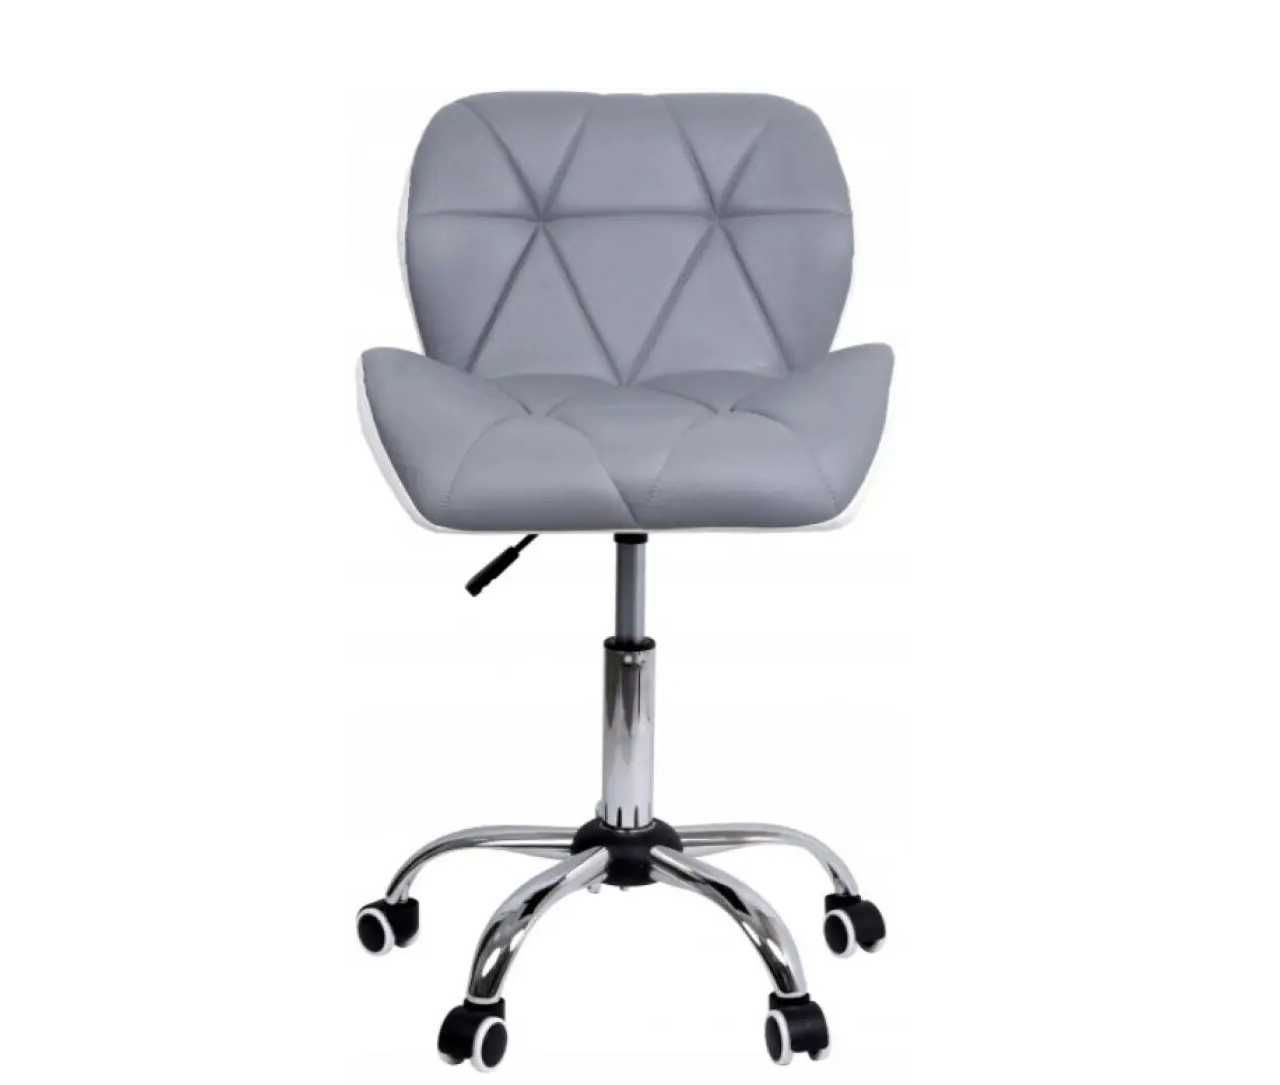 Недорого кресло белое+серое офисное компьютерное/Стул на колесиках